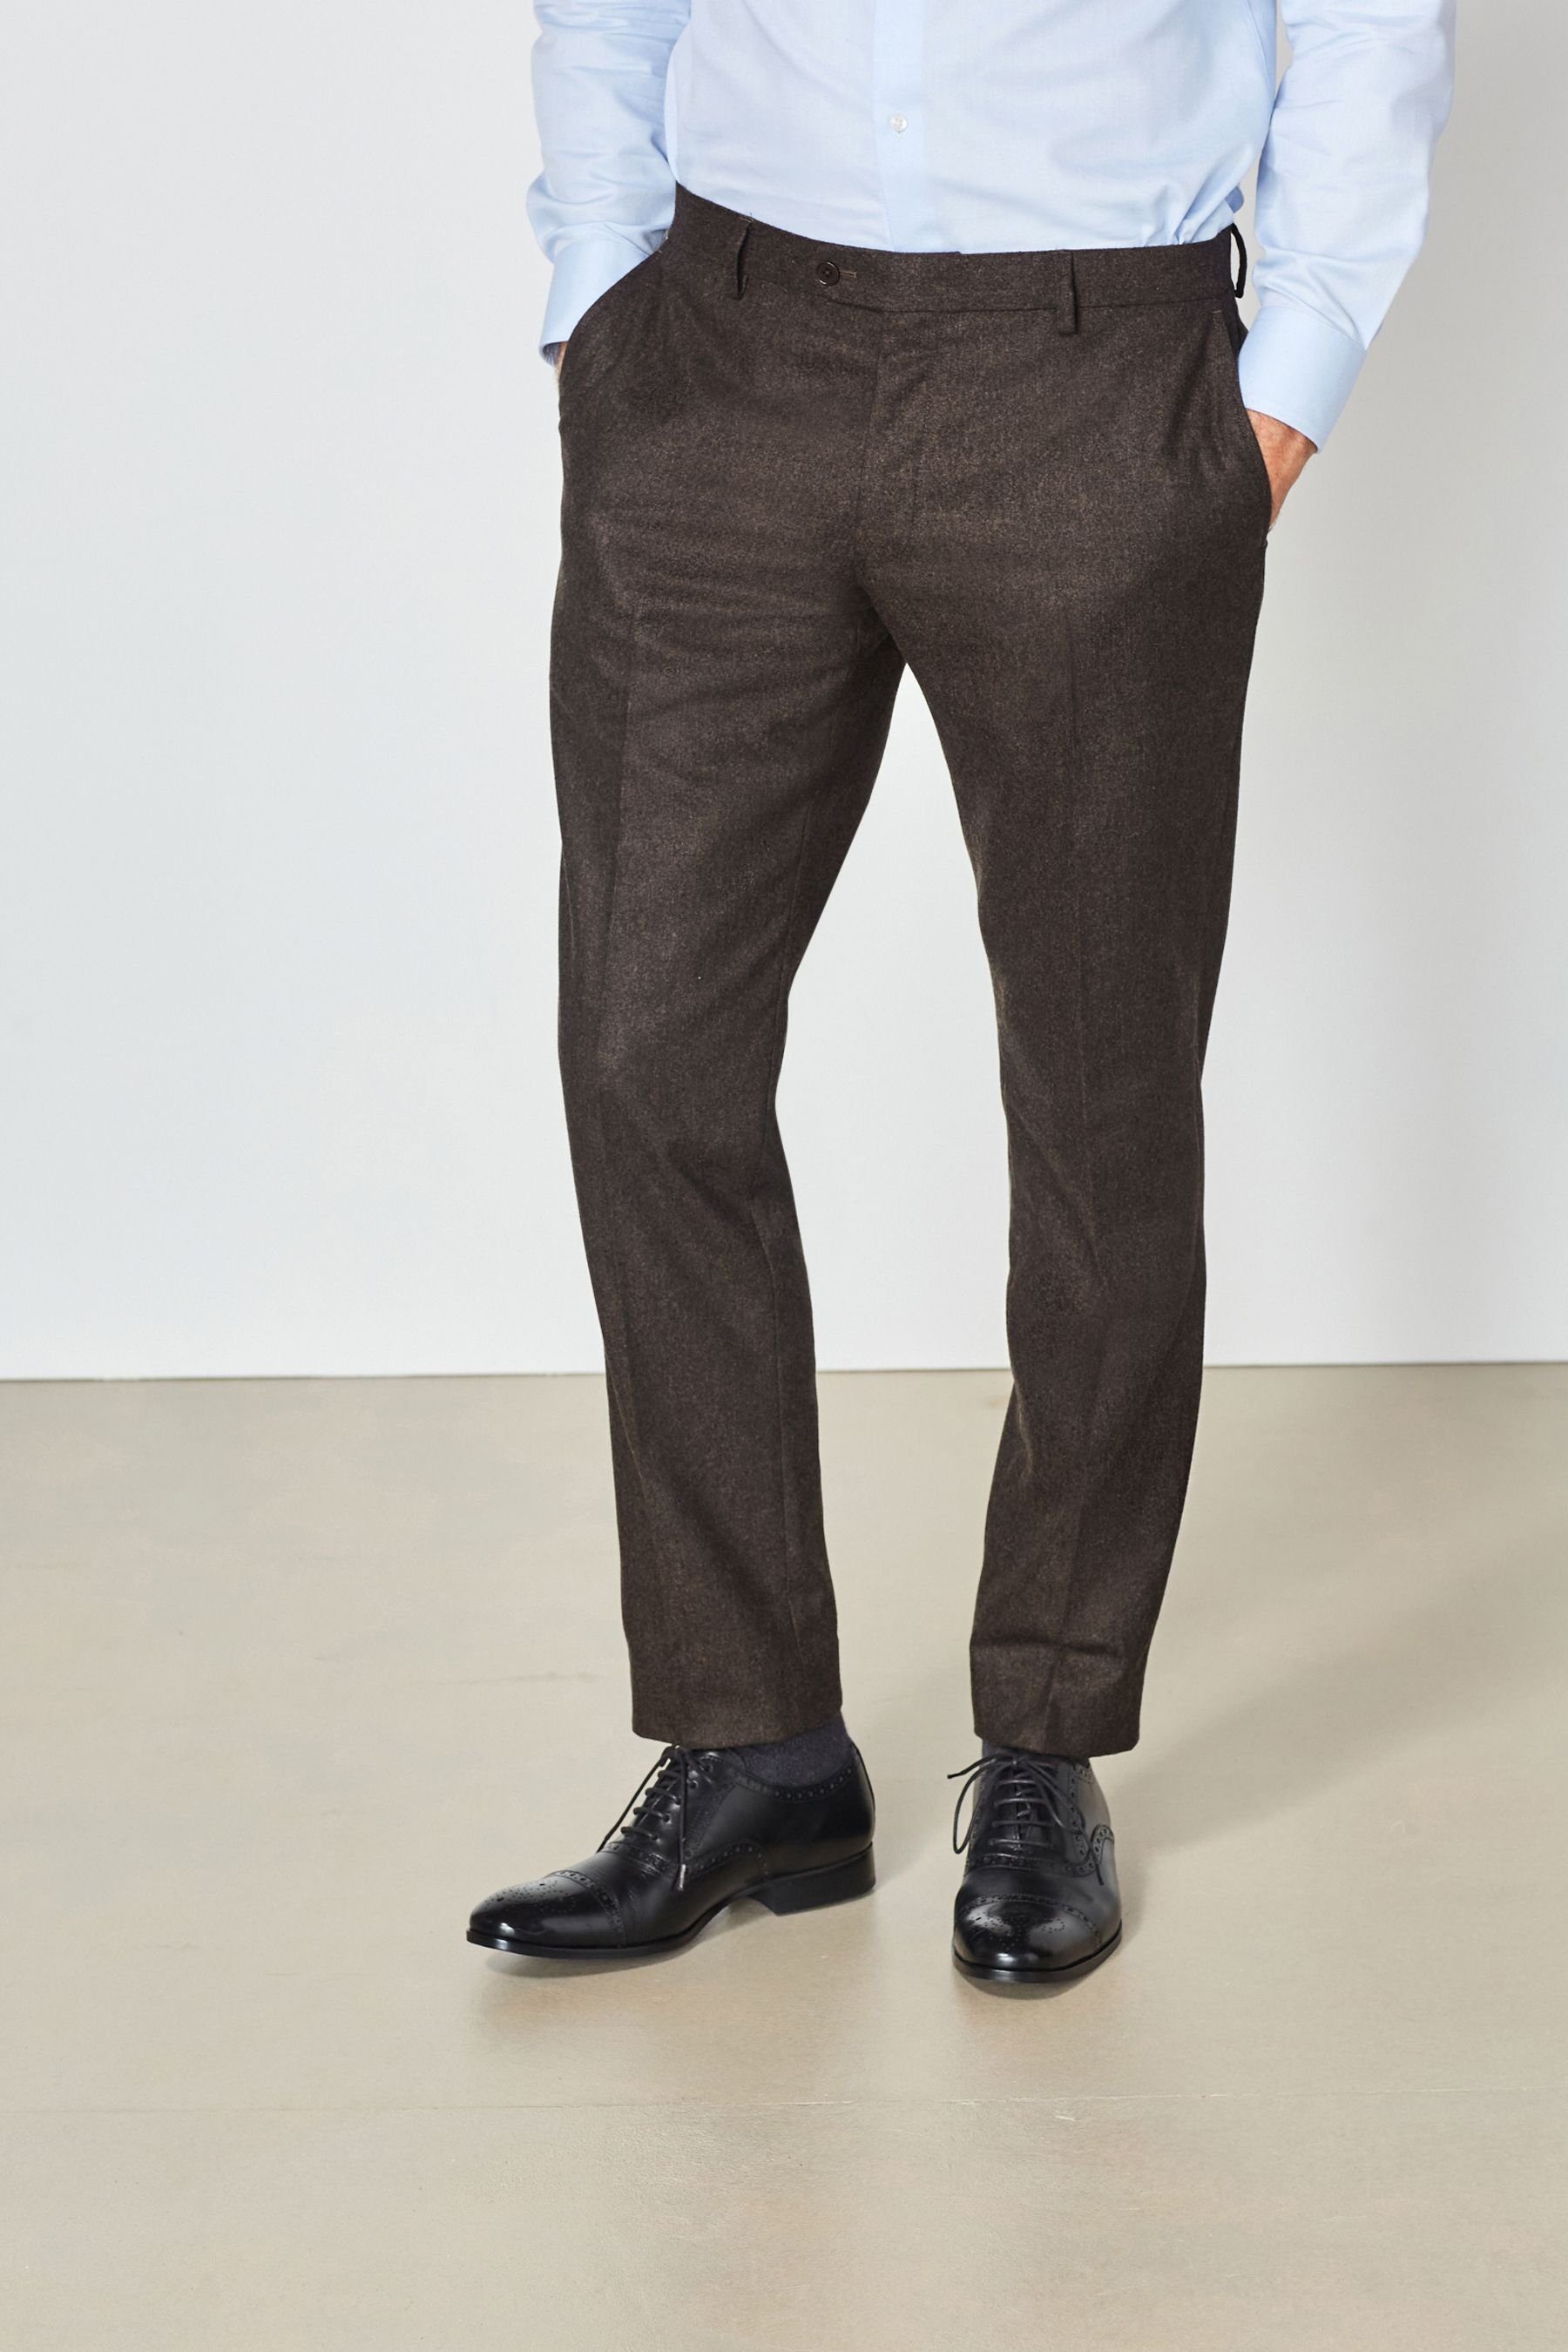 Next Brown (1-tlg) Donegal-Anzug Hose Fit aus Wollmischung: Anzughose Slim